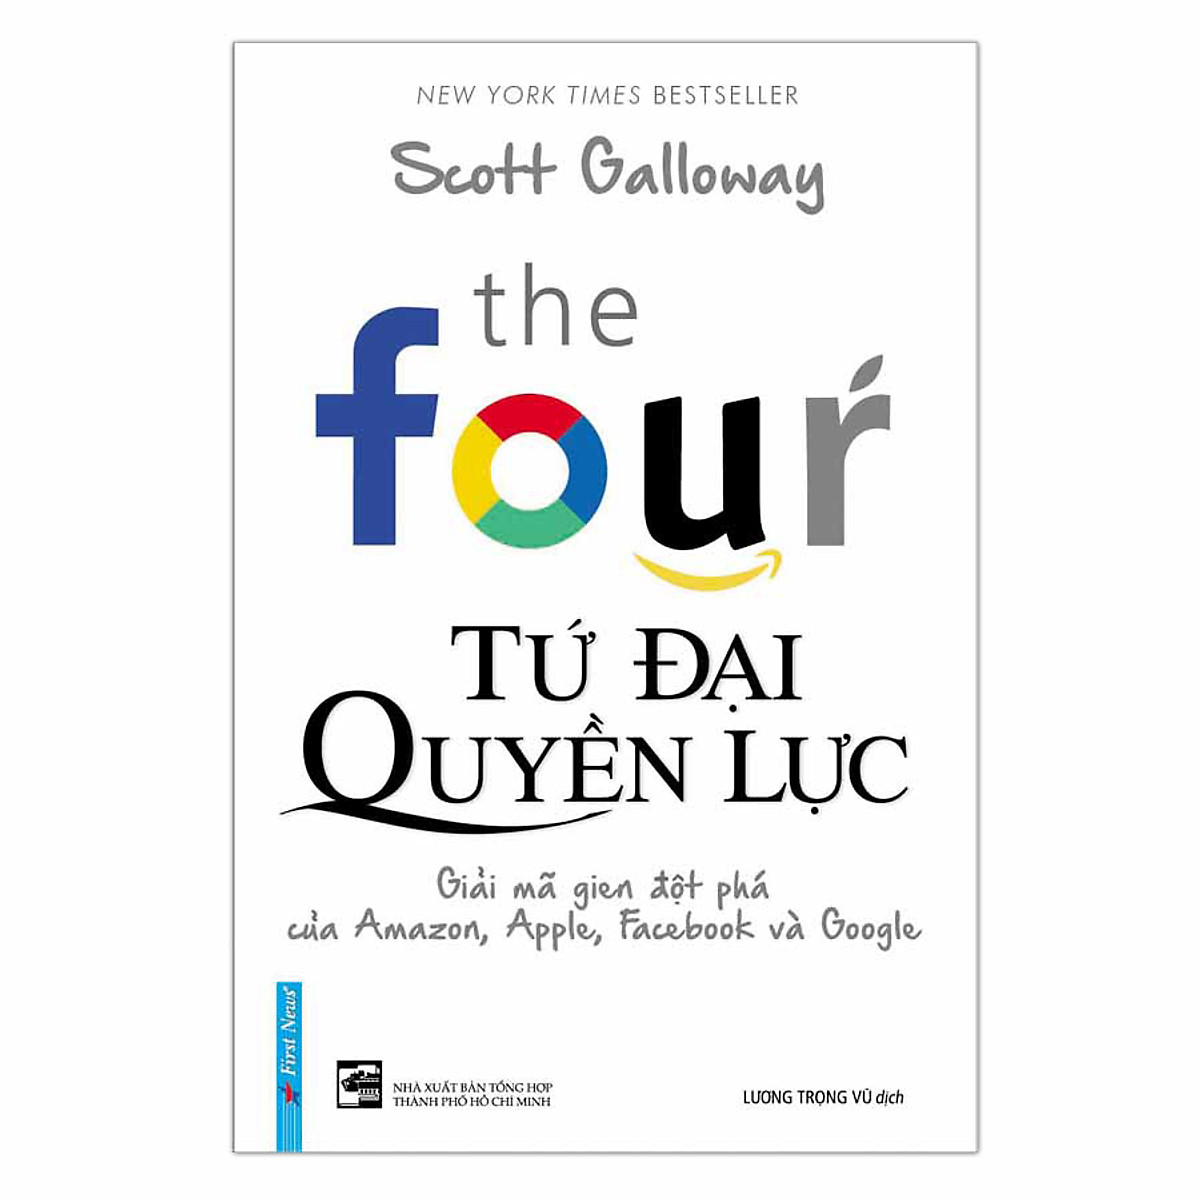 Combo 2 cuốn sách: The Four - Tứ Đại Quyền Lực + Những Bài Học Đầu Tư Từ Warren Buffett